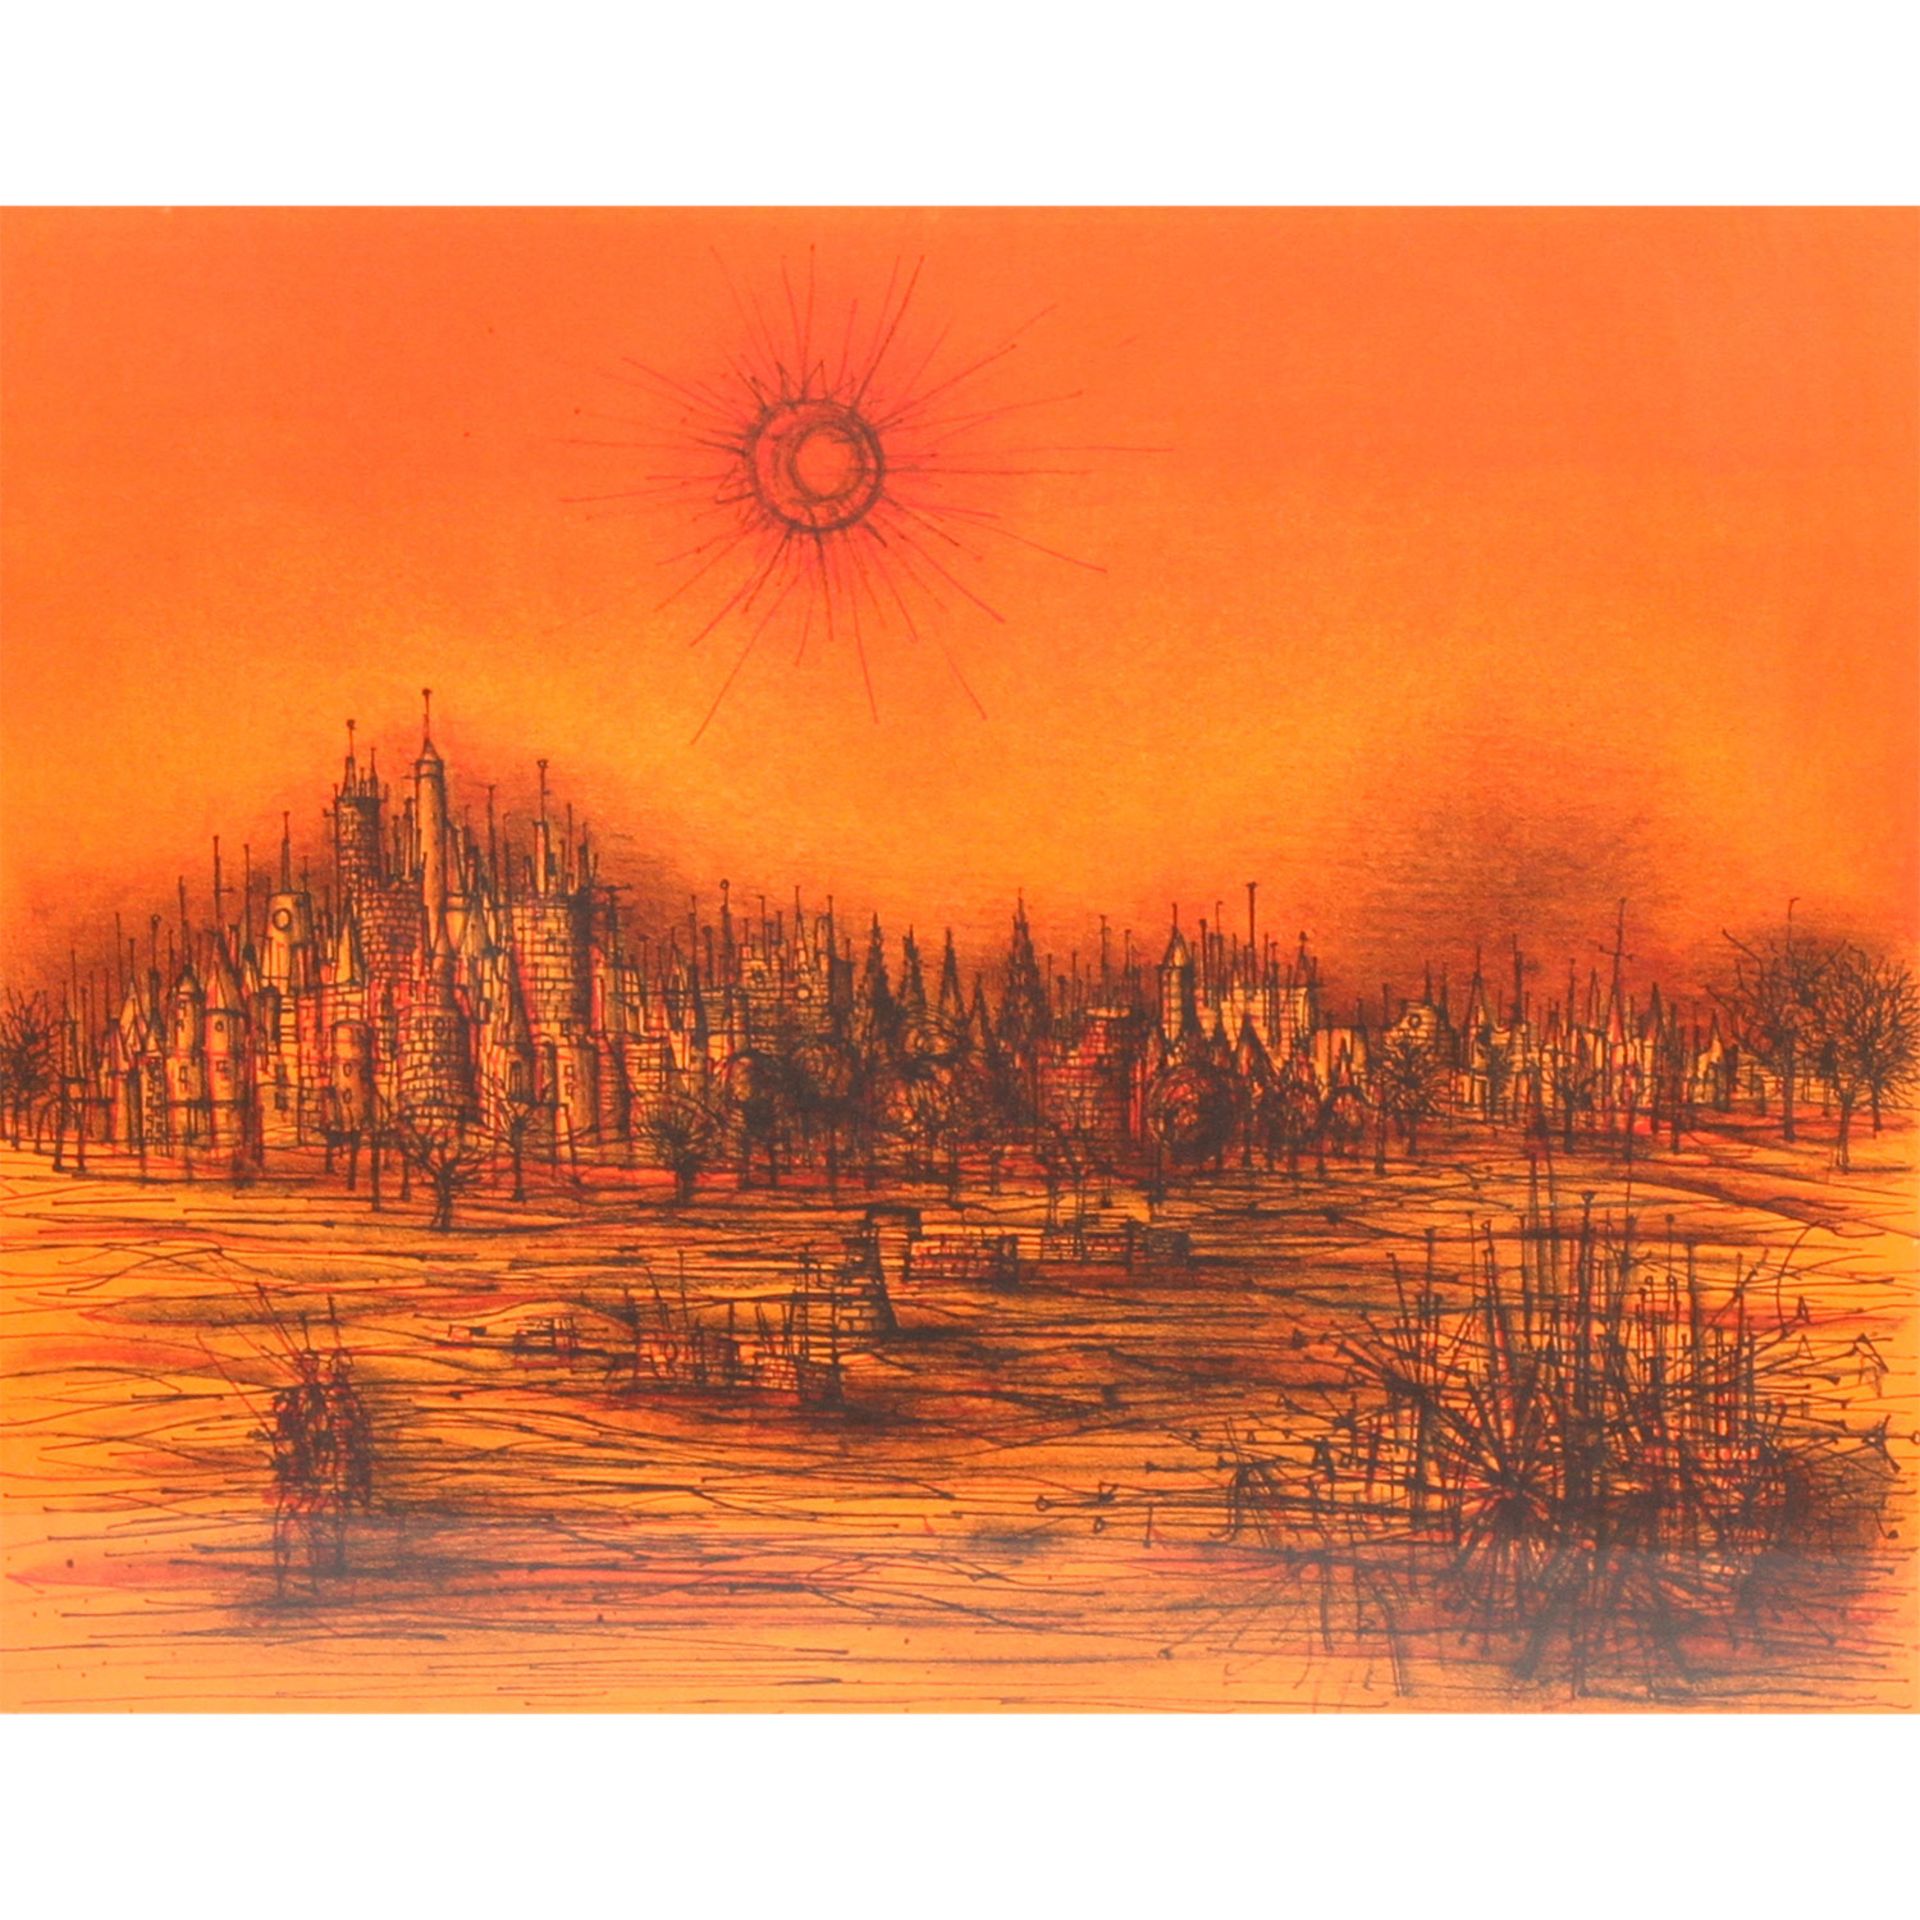 CARZOU, JEAN (1907-2000, französischer Künstler), "Le Burg",Sonne über der Stadt, in Orangerot,